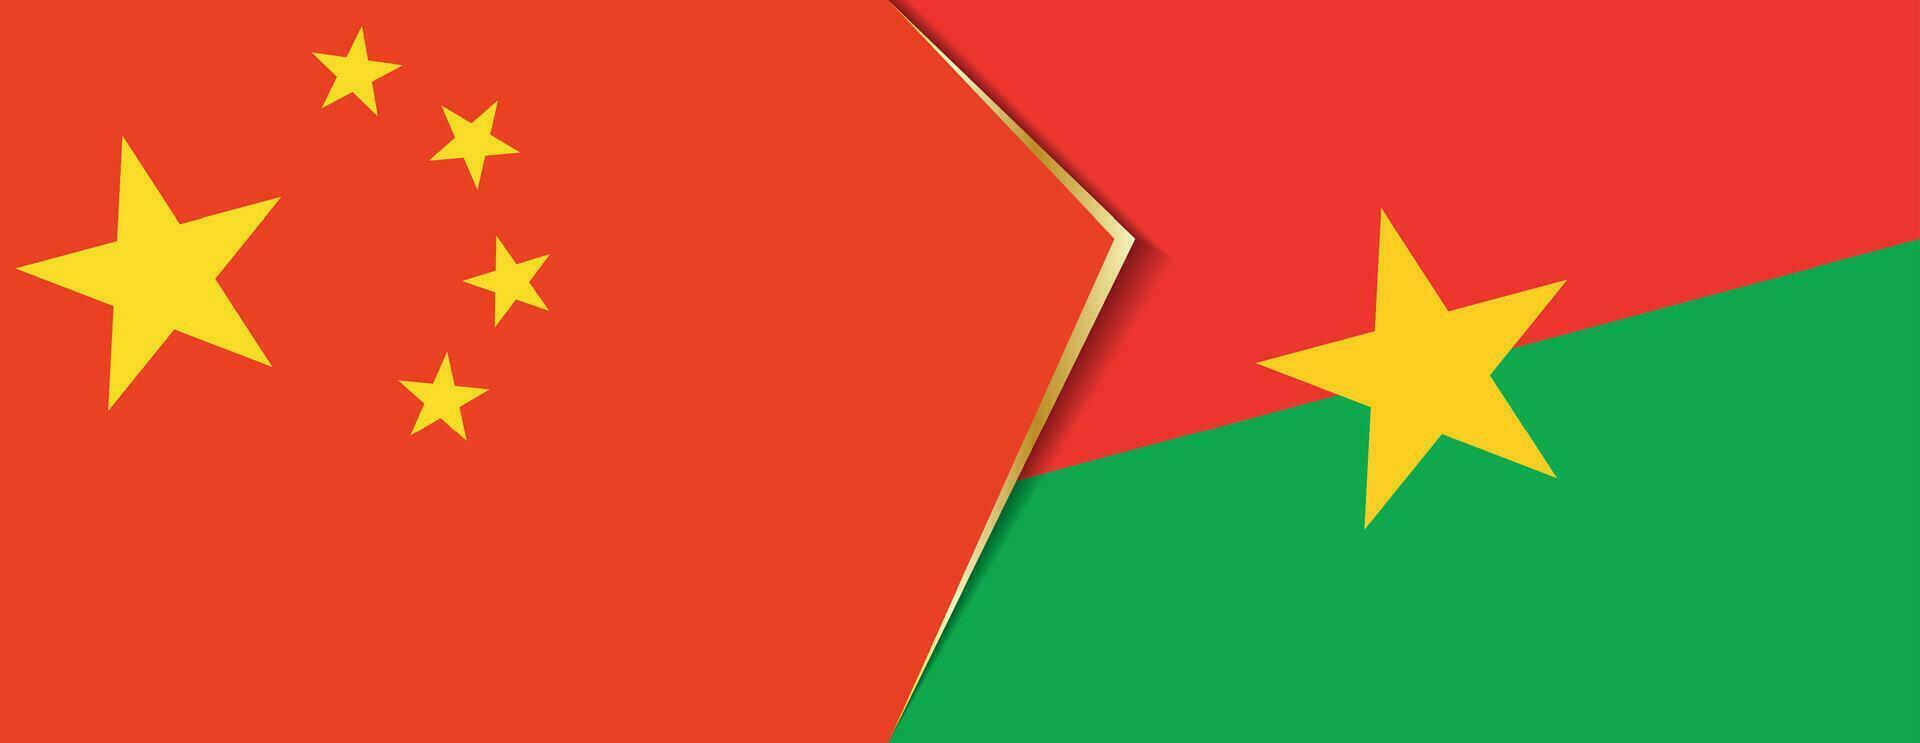 China und Burkina Faso Flaggen, zwei Vektor Flaggen.